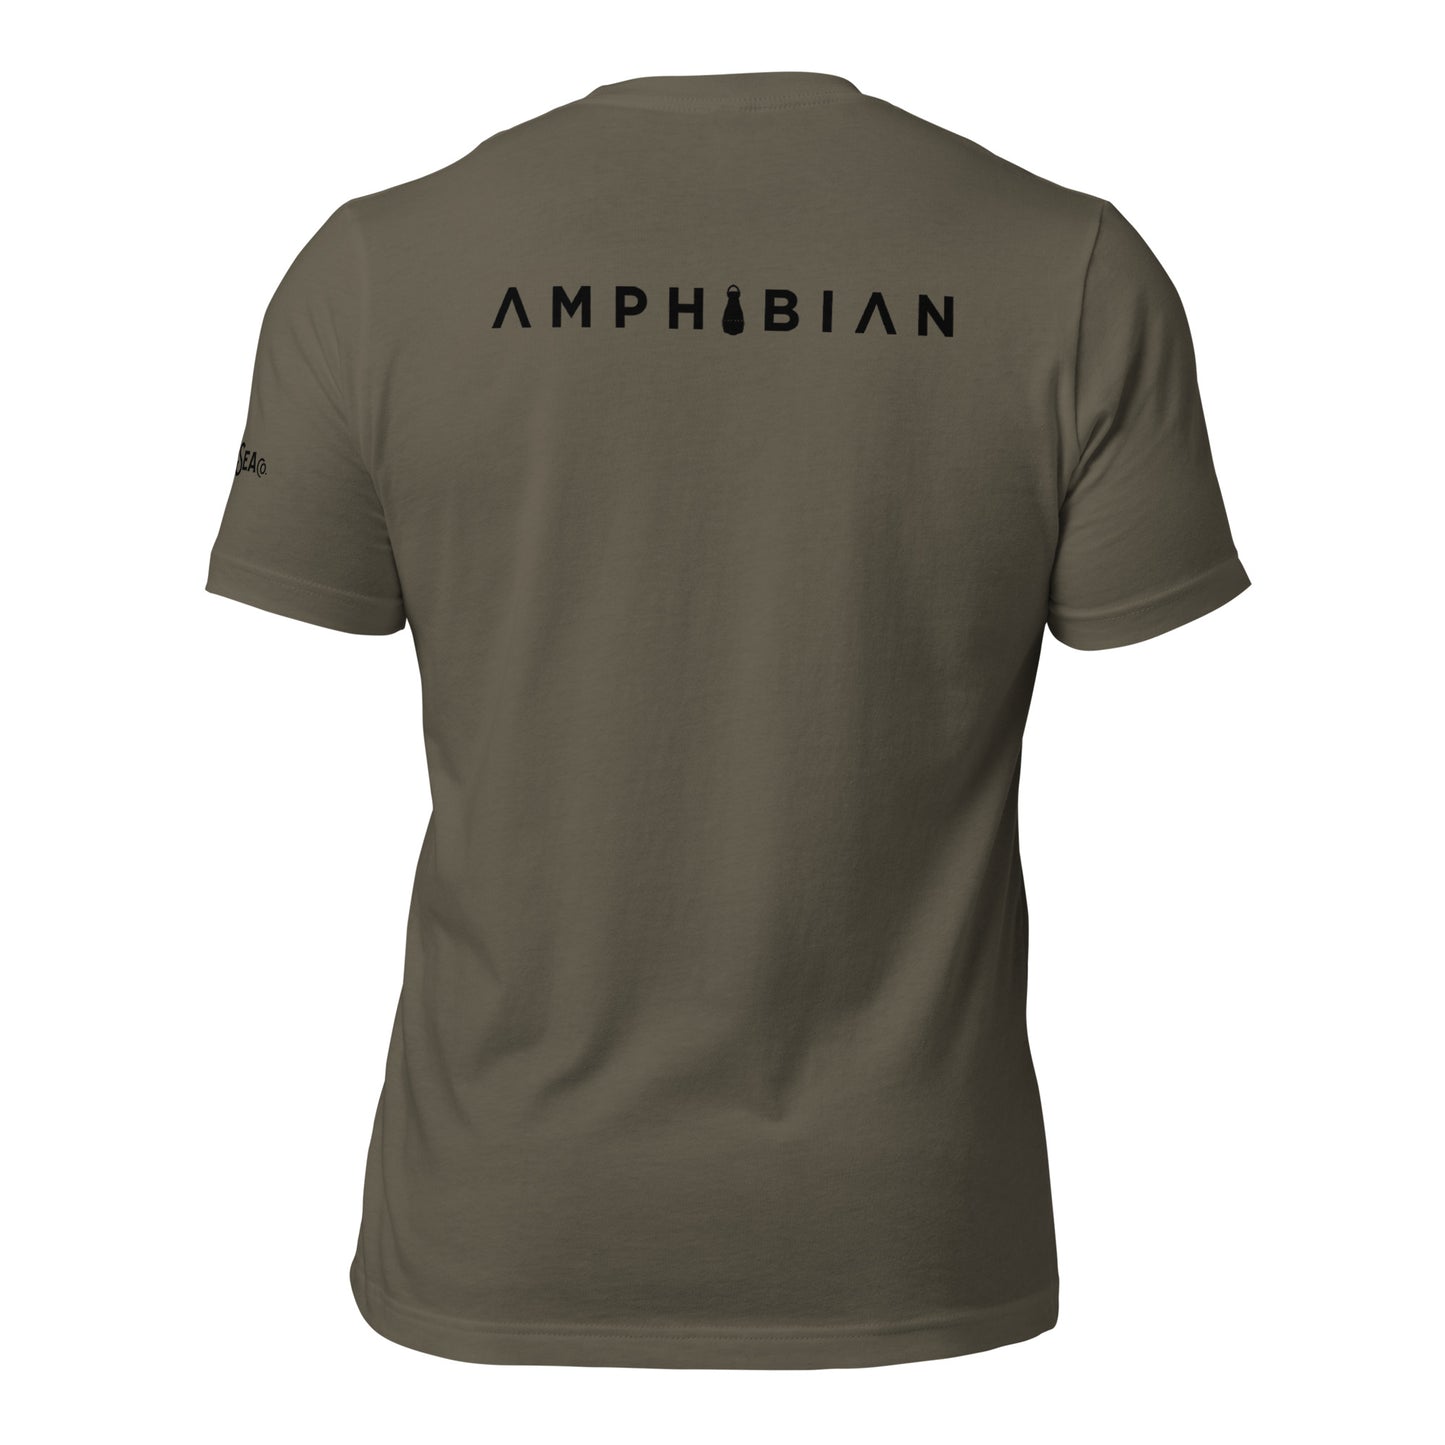 AMPHIBIAN Athlete Unisex t-shirt